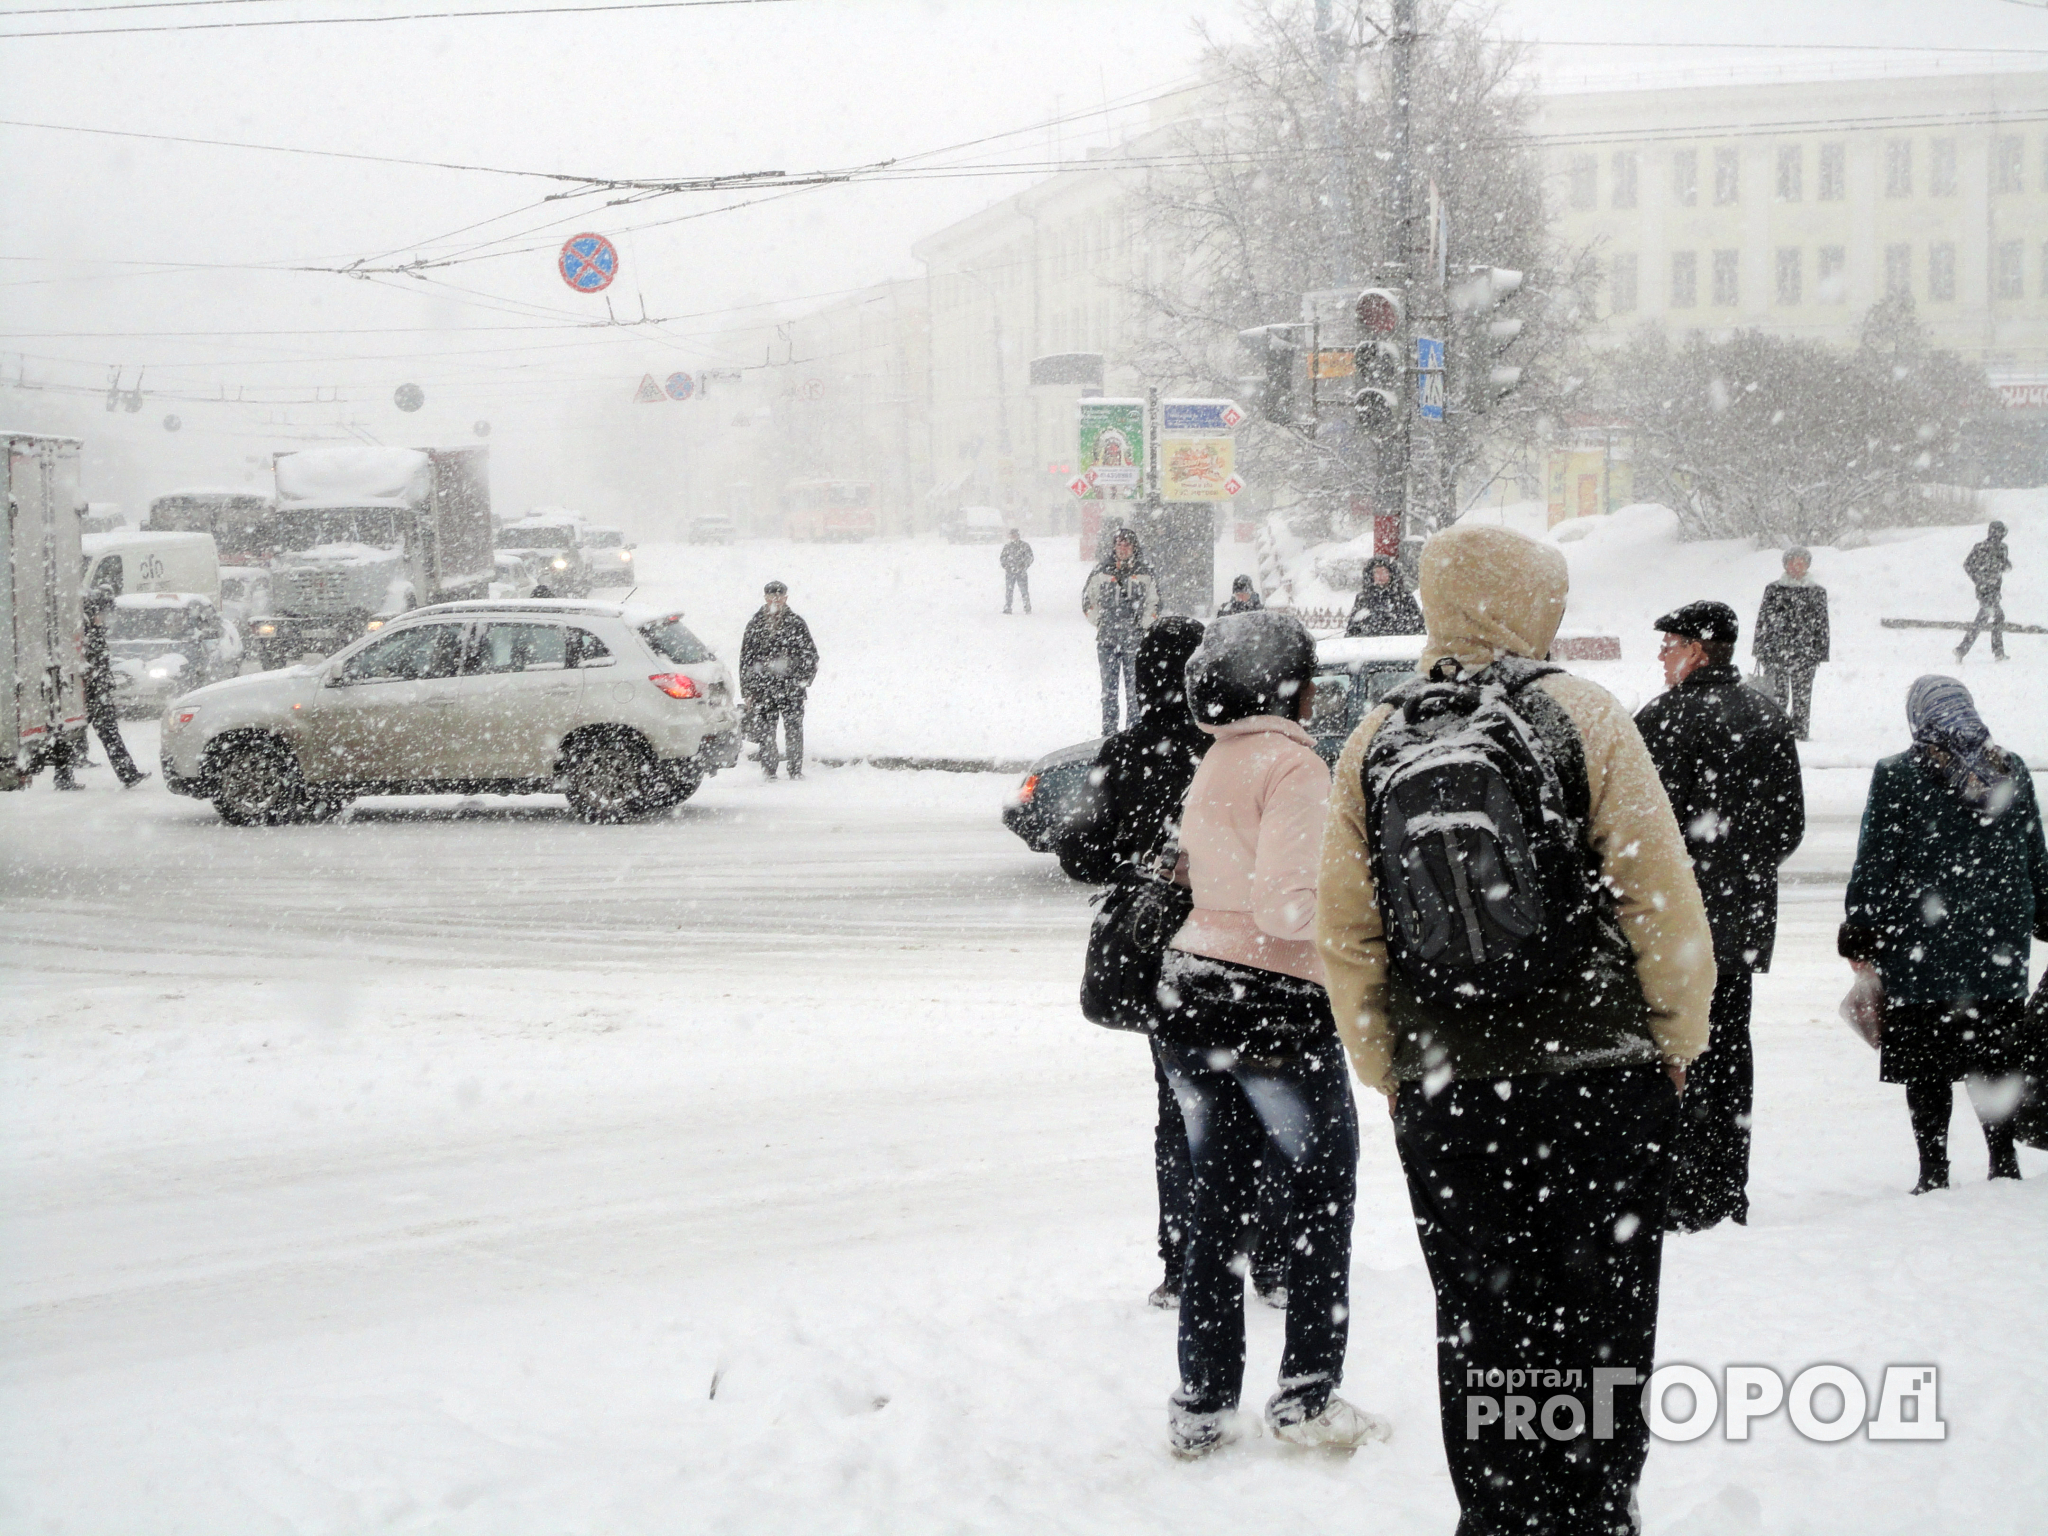 Прогноз погоды на неделю в Кирове: будет снежно и тепло